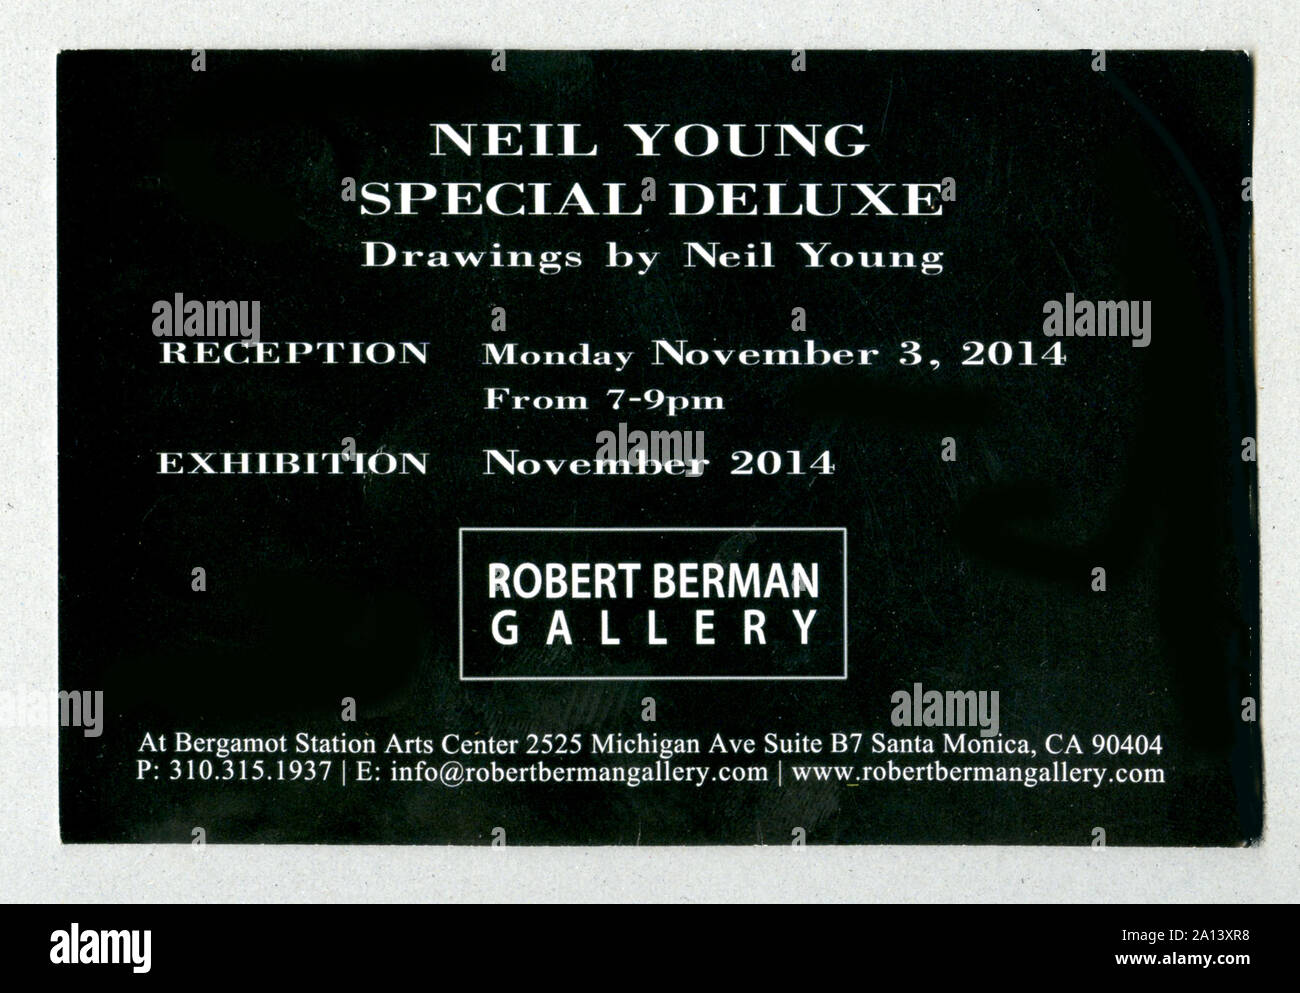 Galerie Ankündigung der Kunstausstellung von Rockstar Neil Young an der Robert Berman Galerie in Santa Monica, CA, 2014 Stockfoto